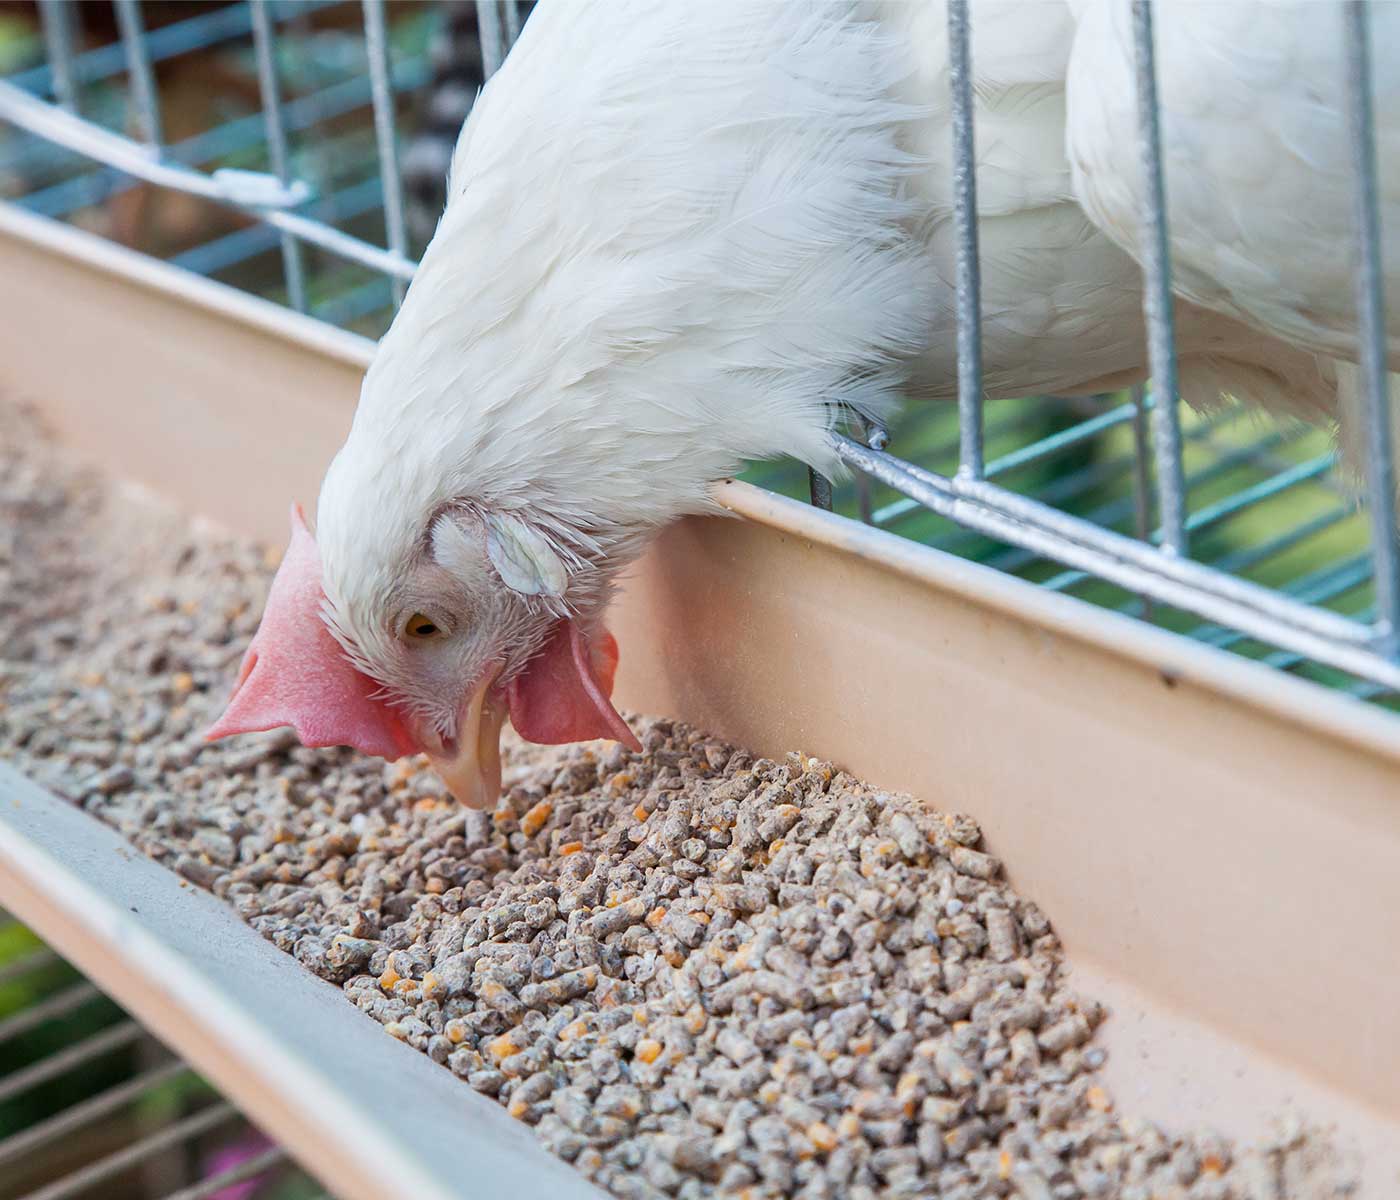 Presentación del pienso y sus efectos en rendimiento y salud de pollos de engorde